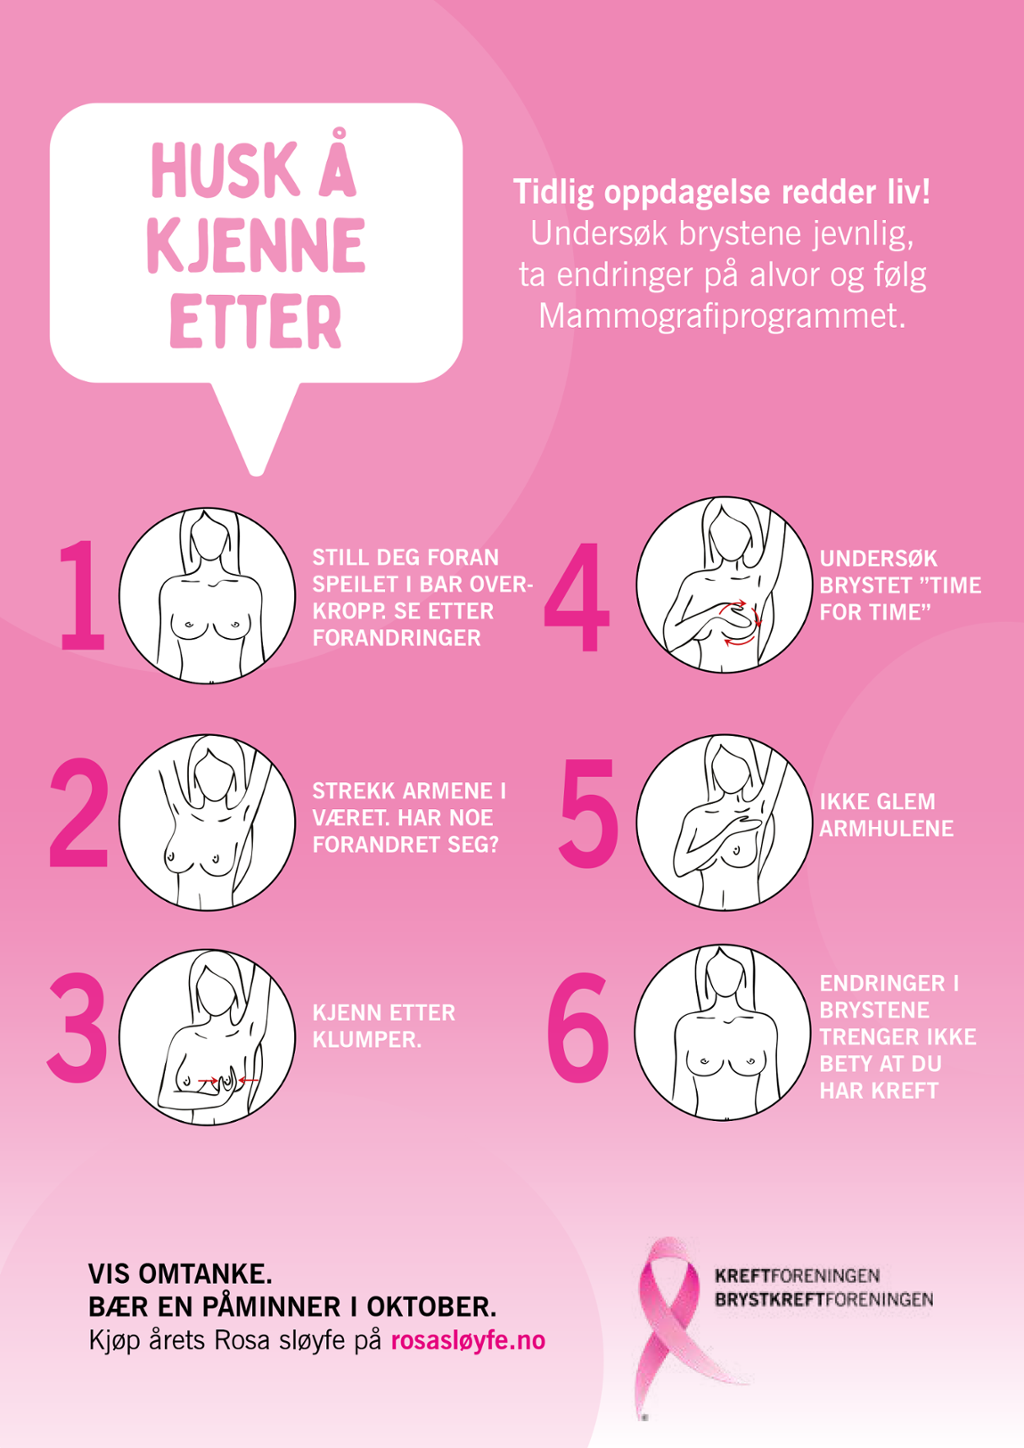 Rosafarget plakat fra Kreftforeningen og Brystkreftforeningen i forbindelse med Rosa sløyfe-aksjonen. Seks tegninger viser hvordan kvinner kan undersøke brystene sine selv. Øverst står det "Husk å kjenne etter". Illustrasjon.